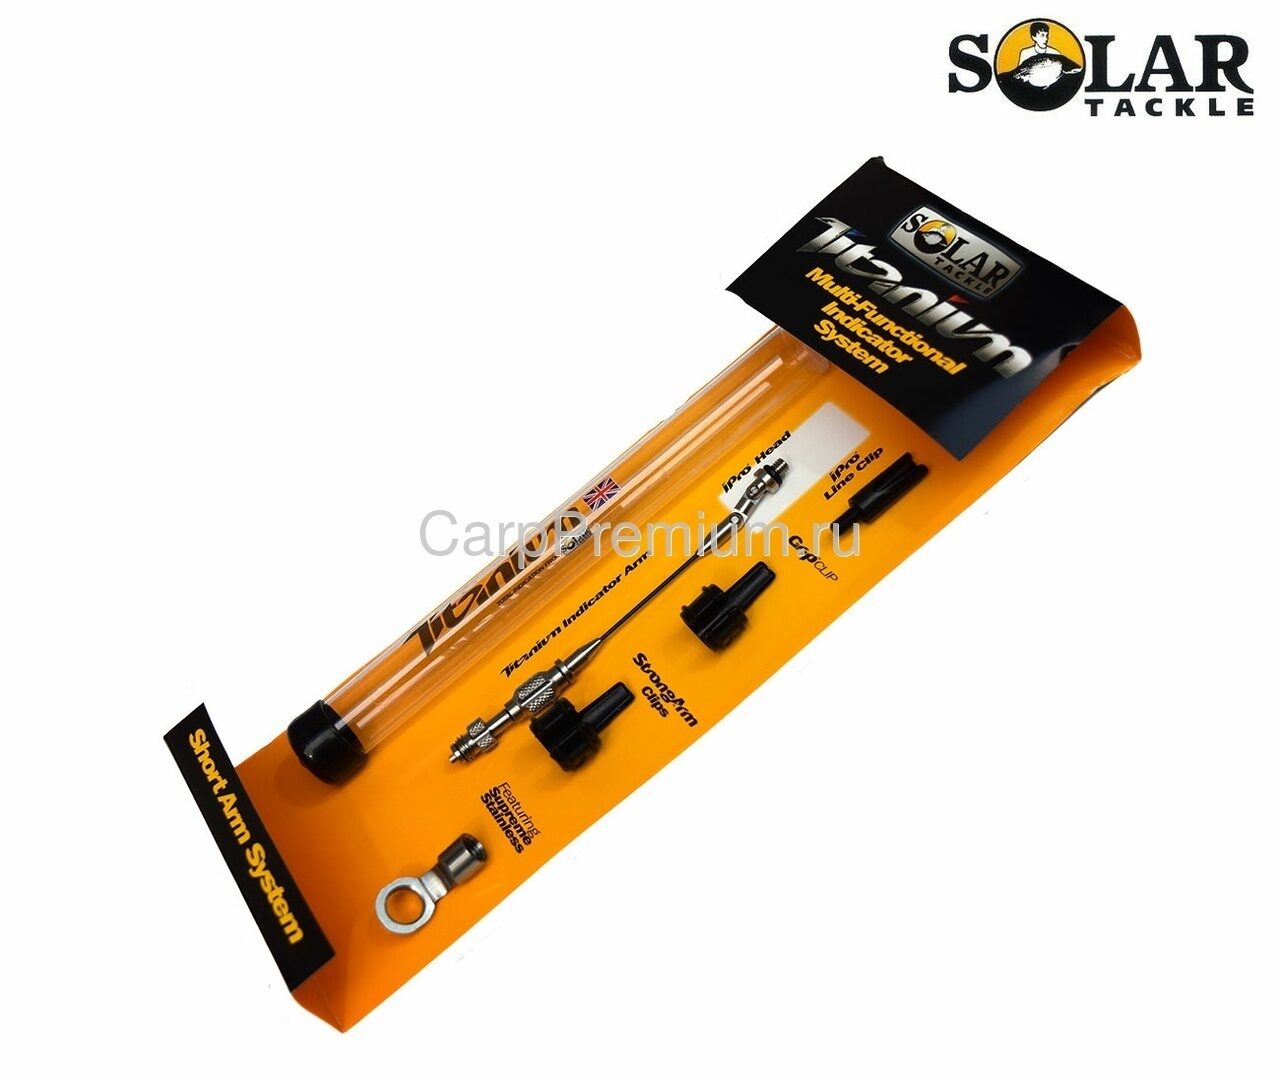 Натяжитель для механического сигнализатора Solar (Солар) - Titanium Short Arm Only, Размер Short / Короткий